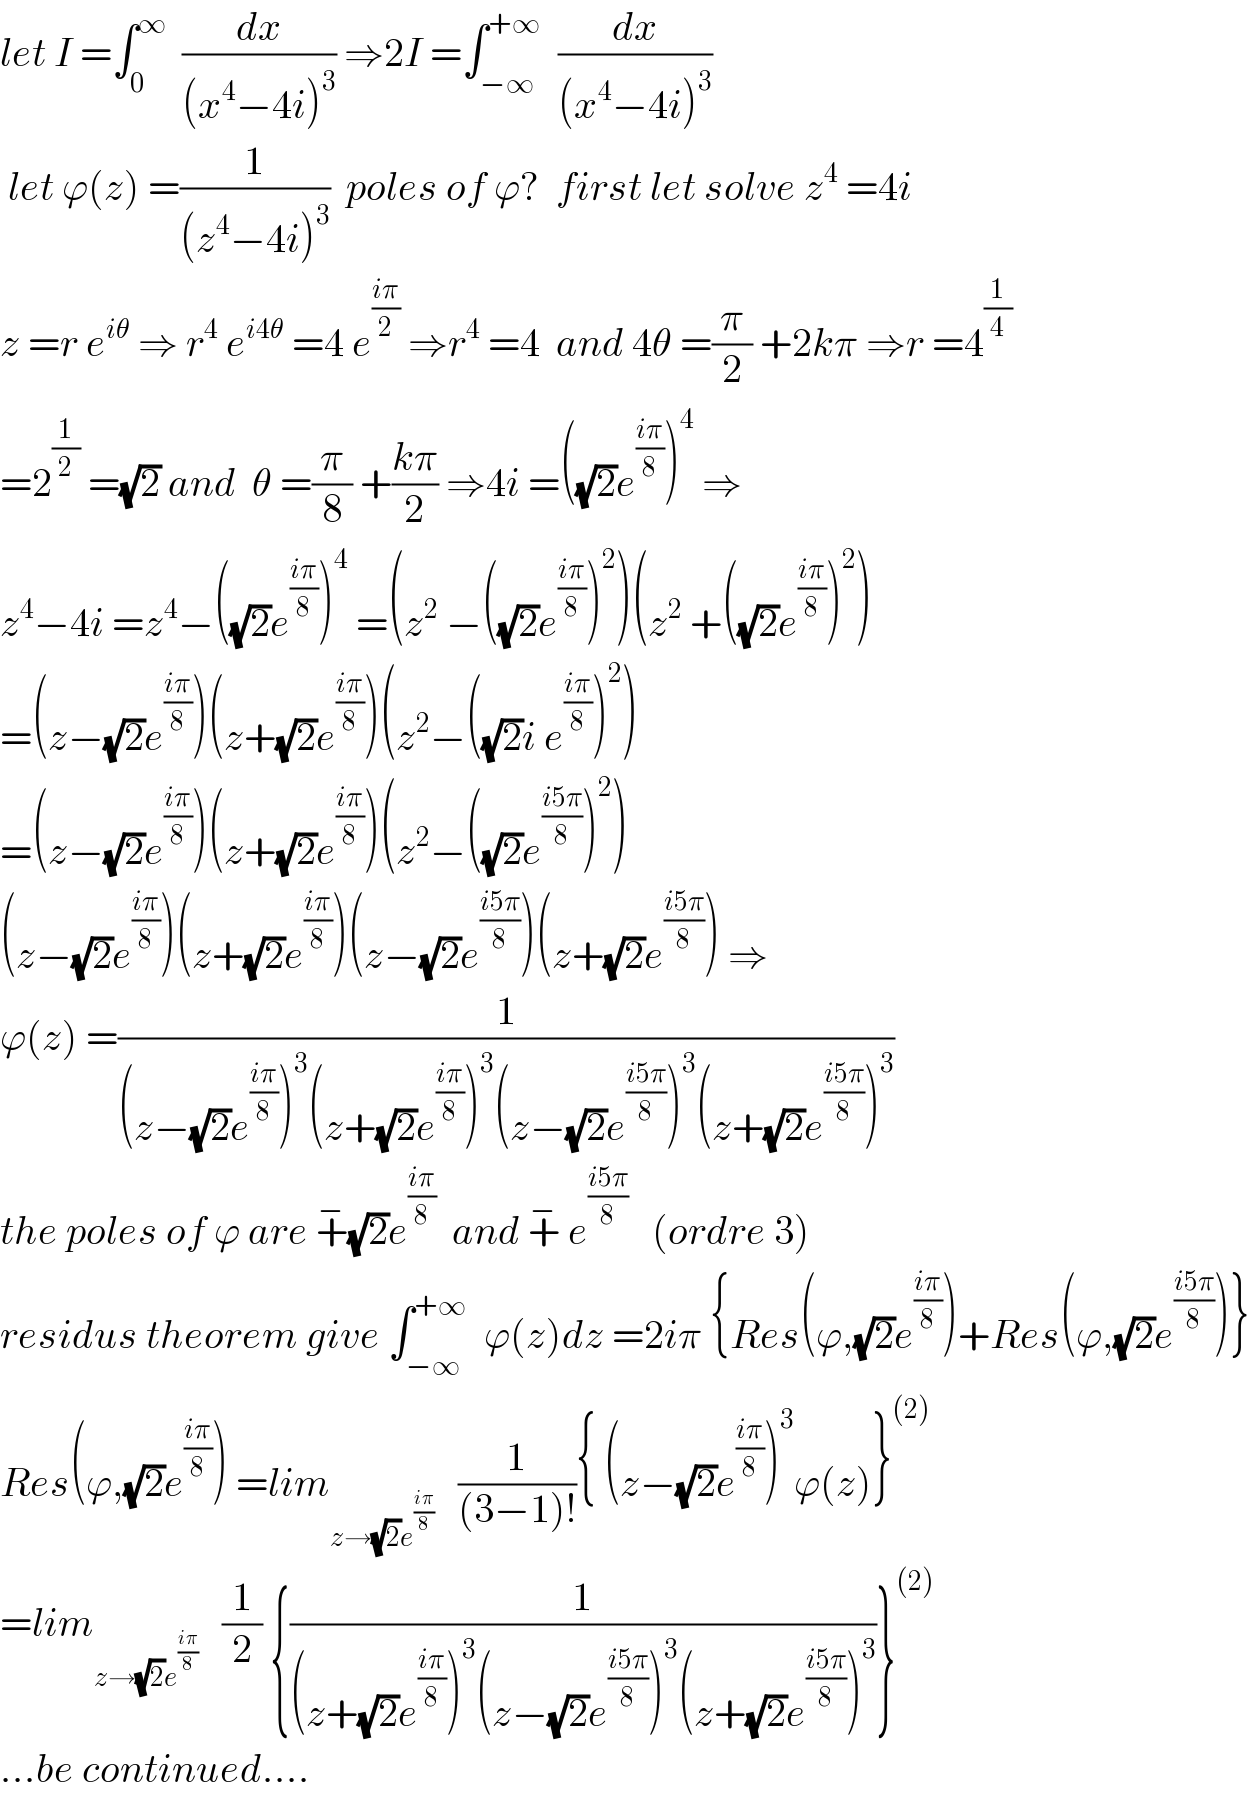 let I =∫_0 ^∞   (dx/((x^4 −4i)^3 )) ⇒2I =∫_(−∞) ^(+∞)   (dx/((x^4 −4i)^3 ))   let ϕ(z) =(1/((z^4 −4i)^3 ))  poles of ϕ?  first let solve z^4  =4i  z =r e^(iθ)  ⇒ r^4  e^(i4θ)  =4 e^((iπ)/2)  ⇒r^4  =4  and 4θ =(π/2) +2kπ ⇒r =4^(1/4)   =2^(1/2)  =(√2) and  θ =(π/8) +((kπ)/2) ⇒4i =((√2)e^((iπ)/8) )^4  ⇒  z^4 −4i =z^4 −((√2)e^((iπ)/8) )^4  =(z^2  −((√2)e^((iπ)/8) )^2 )(z^2  +((√2)e^((iπ)/8) )^2 )  =(z−(√2)e^((iπ)/8) )(z+(√2)e^((iπ)/8) )(z^2 −((√2)i e^((iπ)/8) )^2 )  =(z−(√2)e^((iπ)/8) )(z+(√2)e^((iπ)/8) )(z^2 −((√2)e^((i5π)/8) )^2 )  (z−(√2)e^((iπ)/8) )(z+(√2)e^((iπ)/8) )(z−(√2)e^((i5π)/8) )(z+(√2)e^((i5π)/8) ) ⇒  ϕ(z) =(1/((z−(√2)e^((iπ)/8) )^3 (z+(√2)e^((iπ)/8) )^3 (z−(√2)e^((i5π)/8) )^3 (z+(√2)e^((i5π)/8) )^3 ))  the poles of ϕ are +^− (√2)e^((iπ)/8)   and +^−  e^((i5π)/8)    (ordre 3)  residus theorem give ∫_(−∞) ^(+∞)   ϕ(z)dz =2iπ {Res(ϕ,(√2)e^((iπ)/8) )+Res(ϕ,(√2)e^((i5π)/8) )}  Res(ϕ,(√2)e^((iπ)/8) ) =lim_(z→(√2)e^((iπ)/8) )    (1/((3−1)!)){ (z−(√2)e^((iπ)/8) )^3 ϕ(z)}^((2))   =lim_(z→(√2)e^((iπ)/8) )    (1/2) {(1/((z+(√2)e^((iπ)/8) )^3 (z−(√2)e^((i5π)/8) )^3 (z+(√2)e^((i5π)/8) )^3 ))}^((2))   ...be continued....  